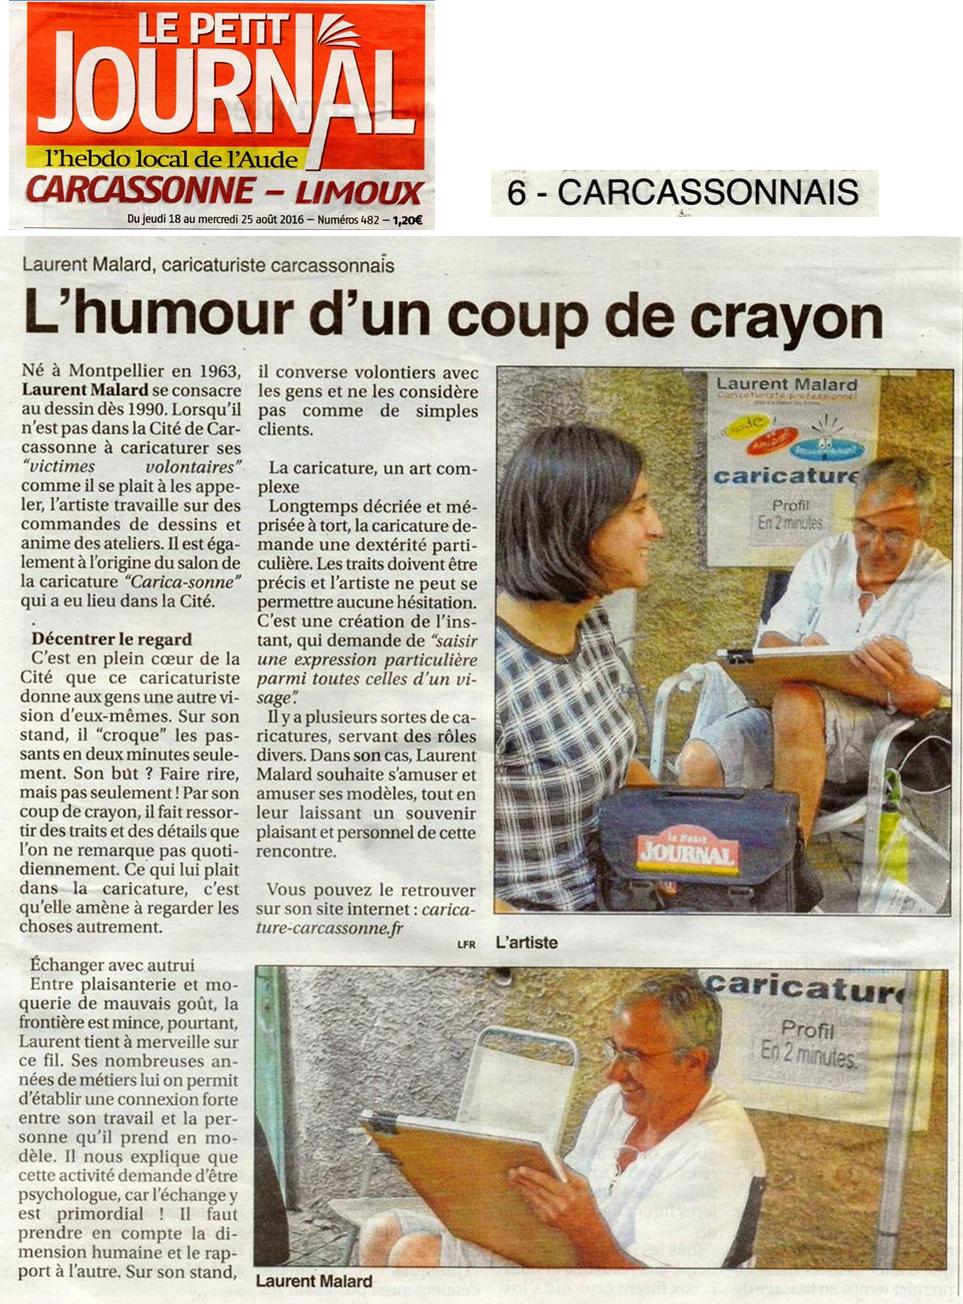 Le Petit Journal - Aude - Carcassonne - Limoux.
Jeudi 18 août 2016.